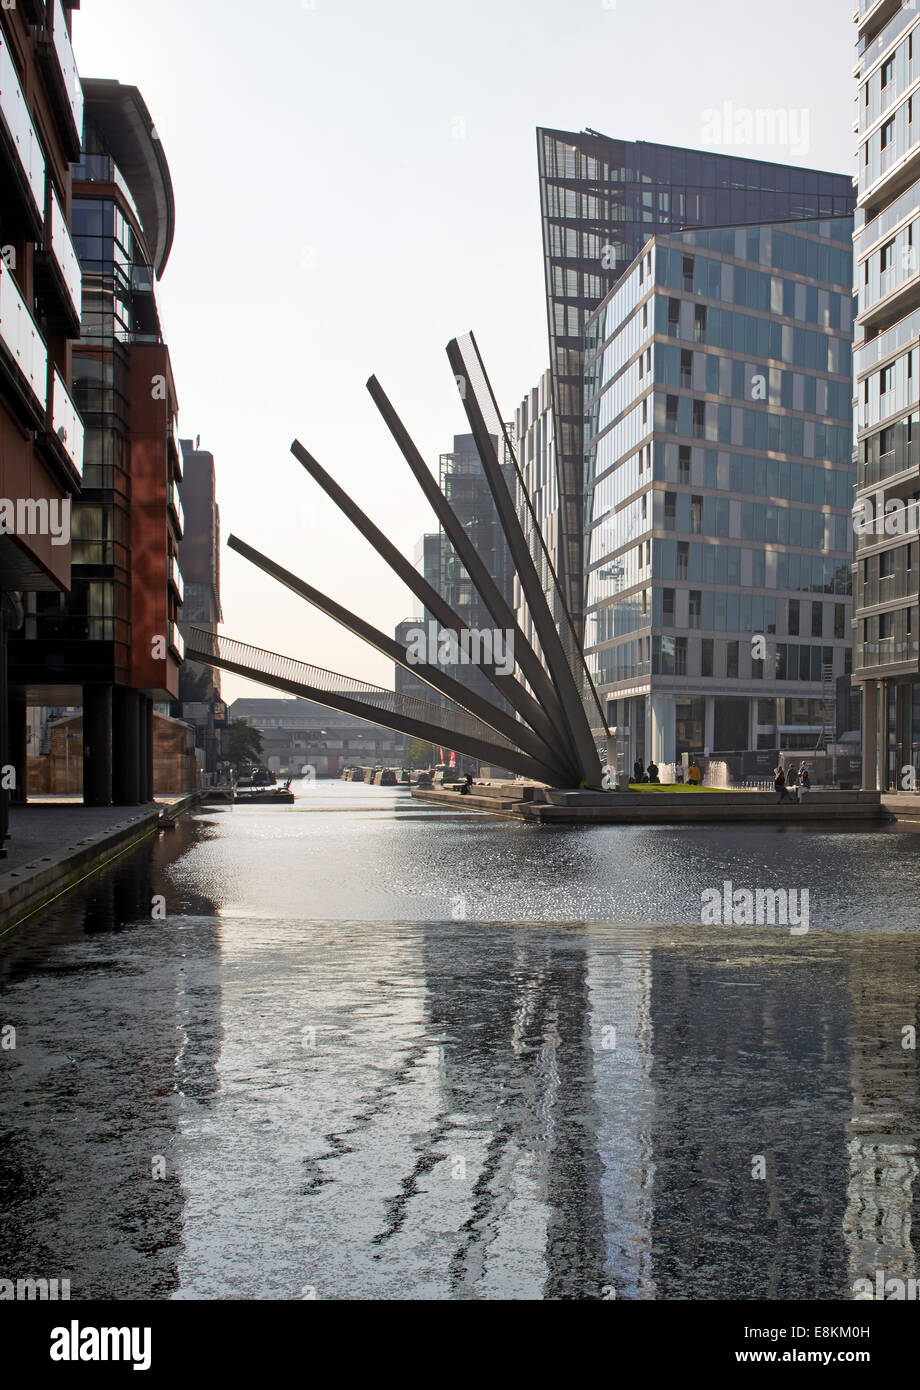 Passerelle Merchant Square, Londres, Royaume-Uni. Architecte : Knight Architects Limited, 2014. Vue lointaine avec pont en elev Banque D'Images